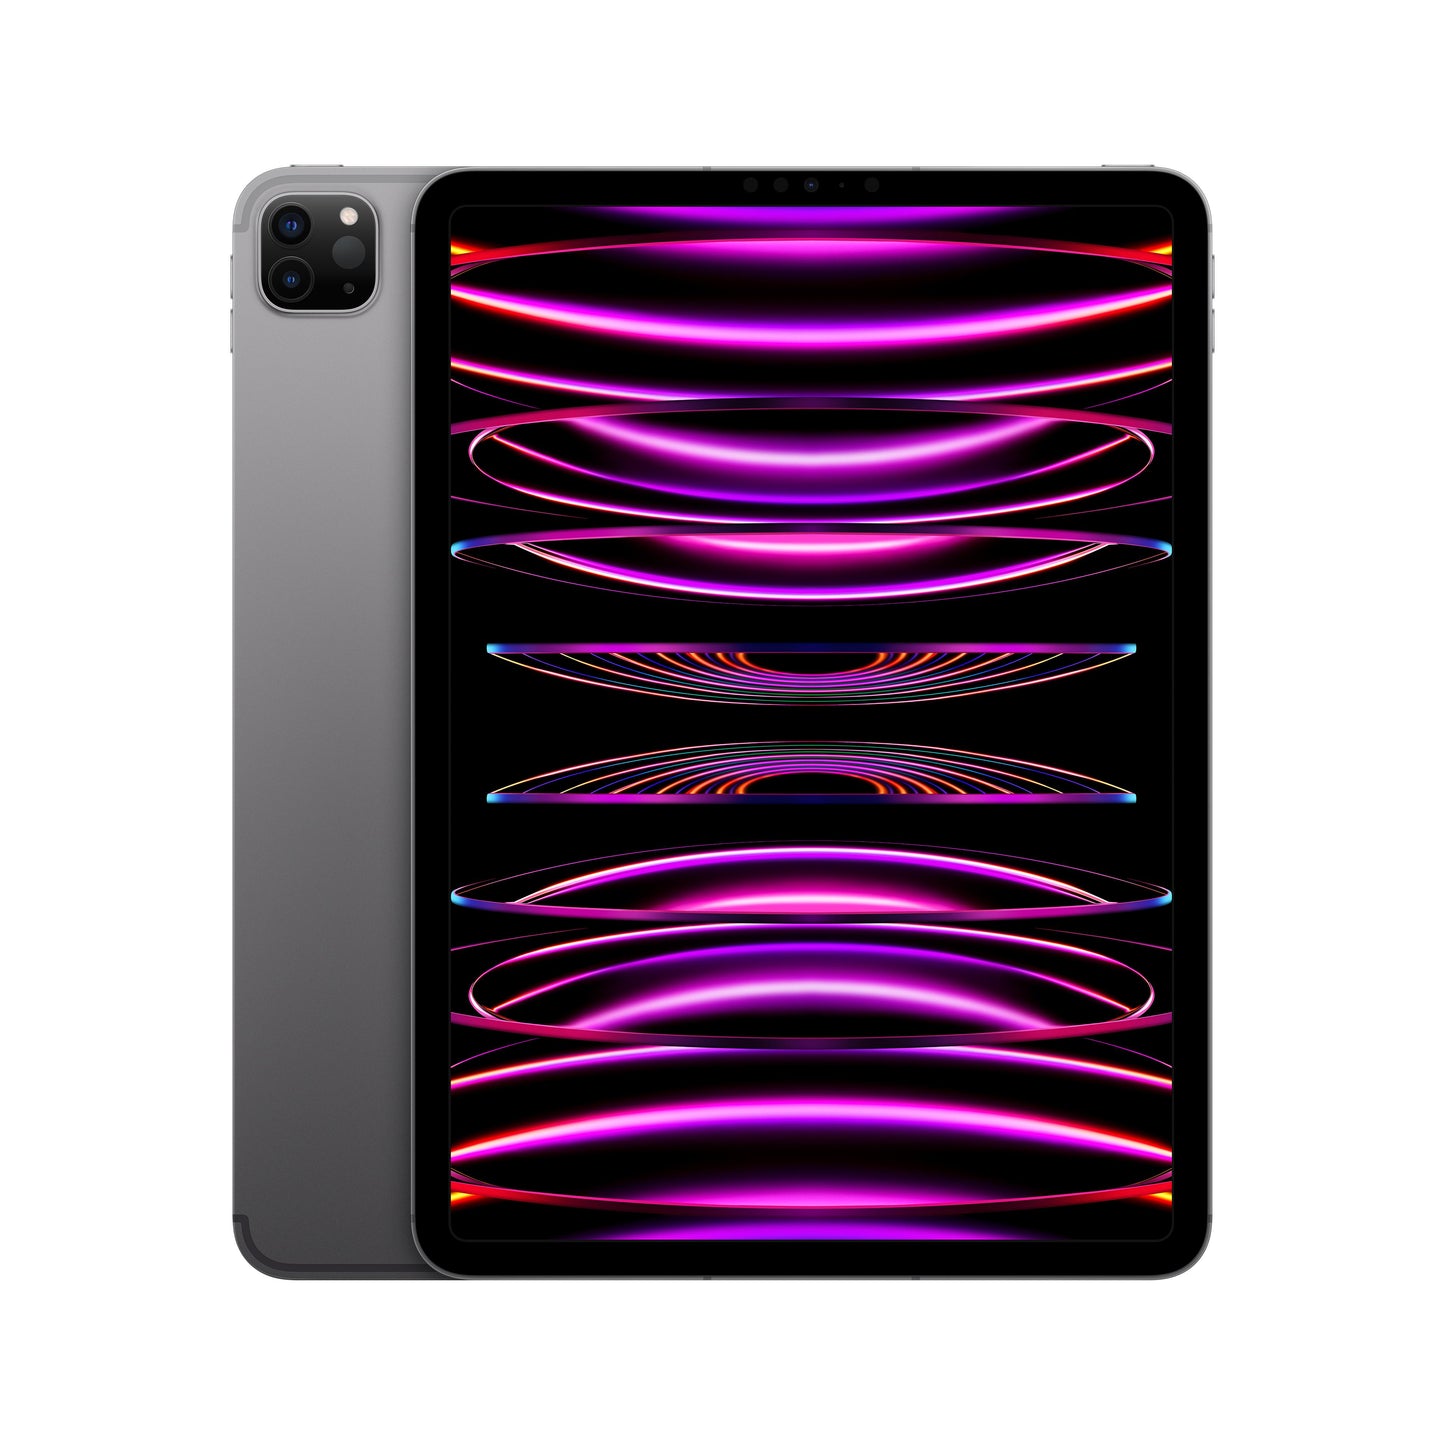 2022 11-inch iPad Pro Wi-Fi + Cellular 2TB - Space Grey (4th generation)